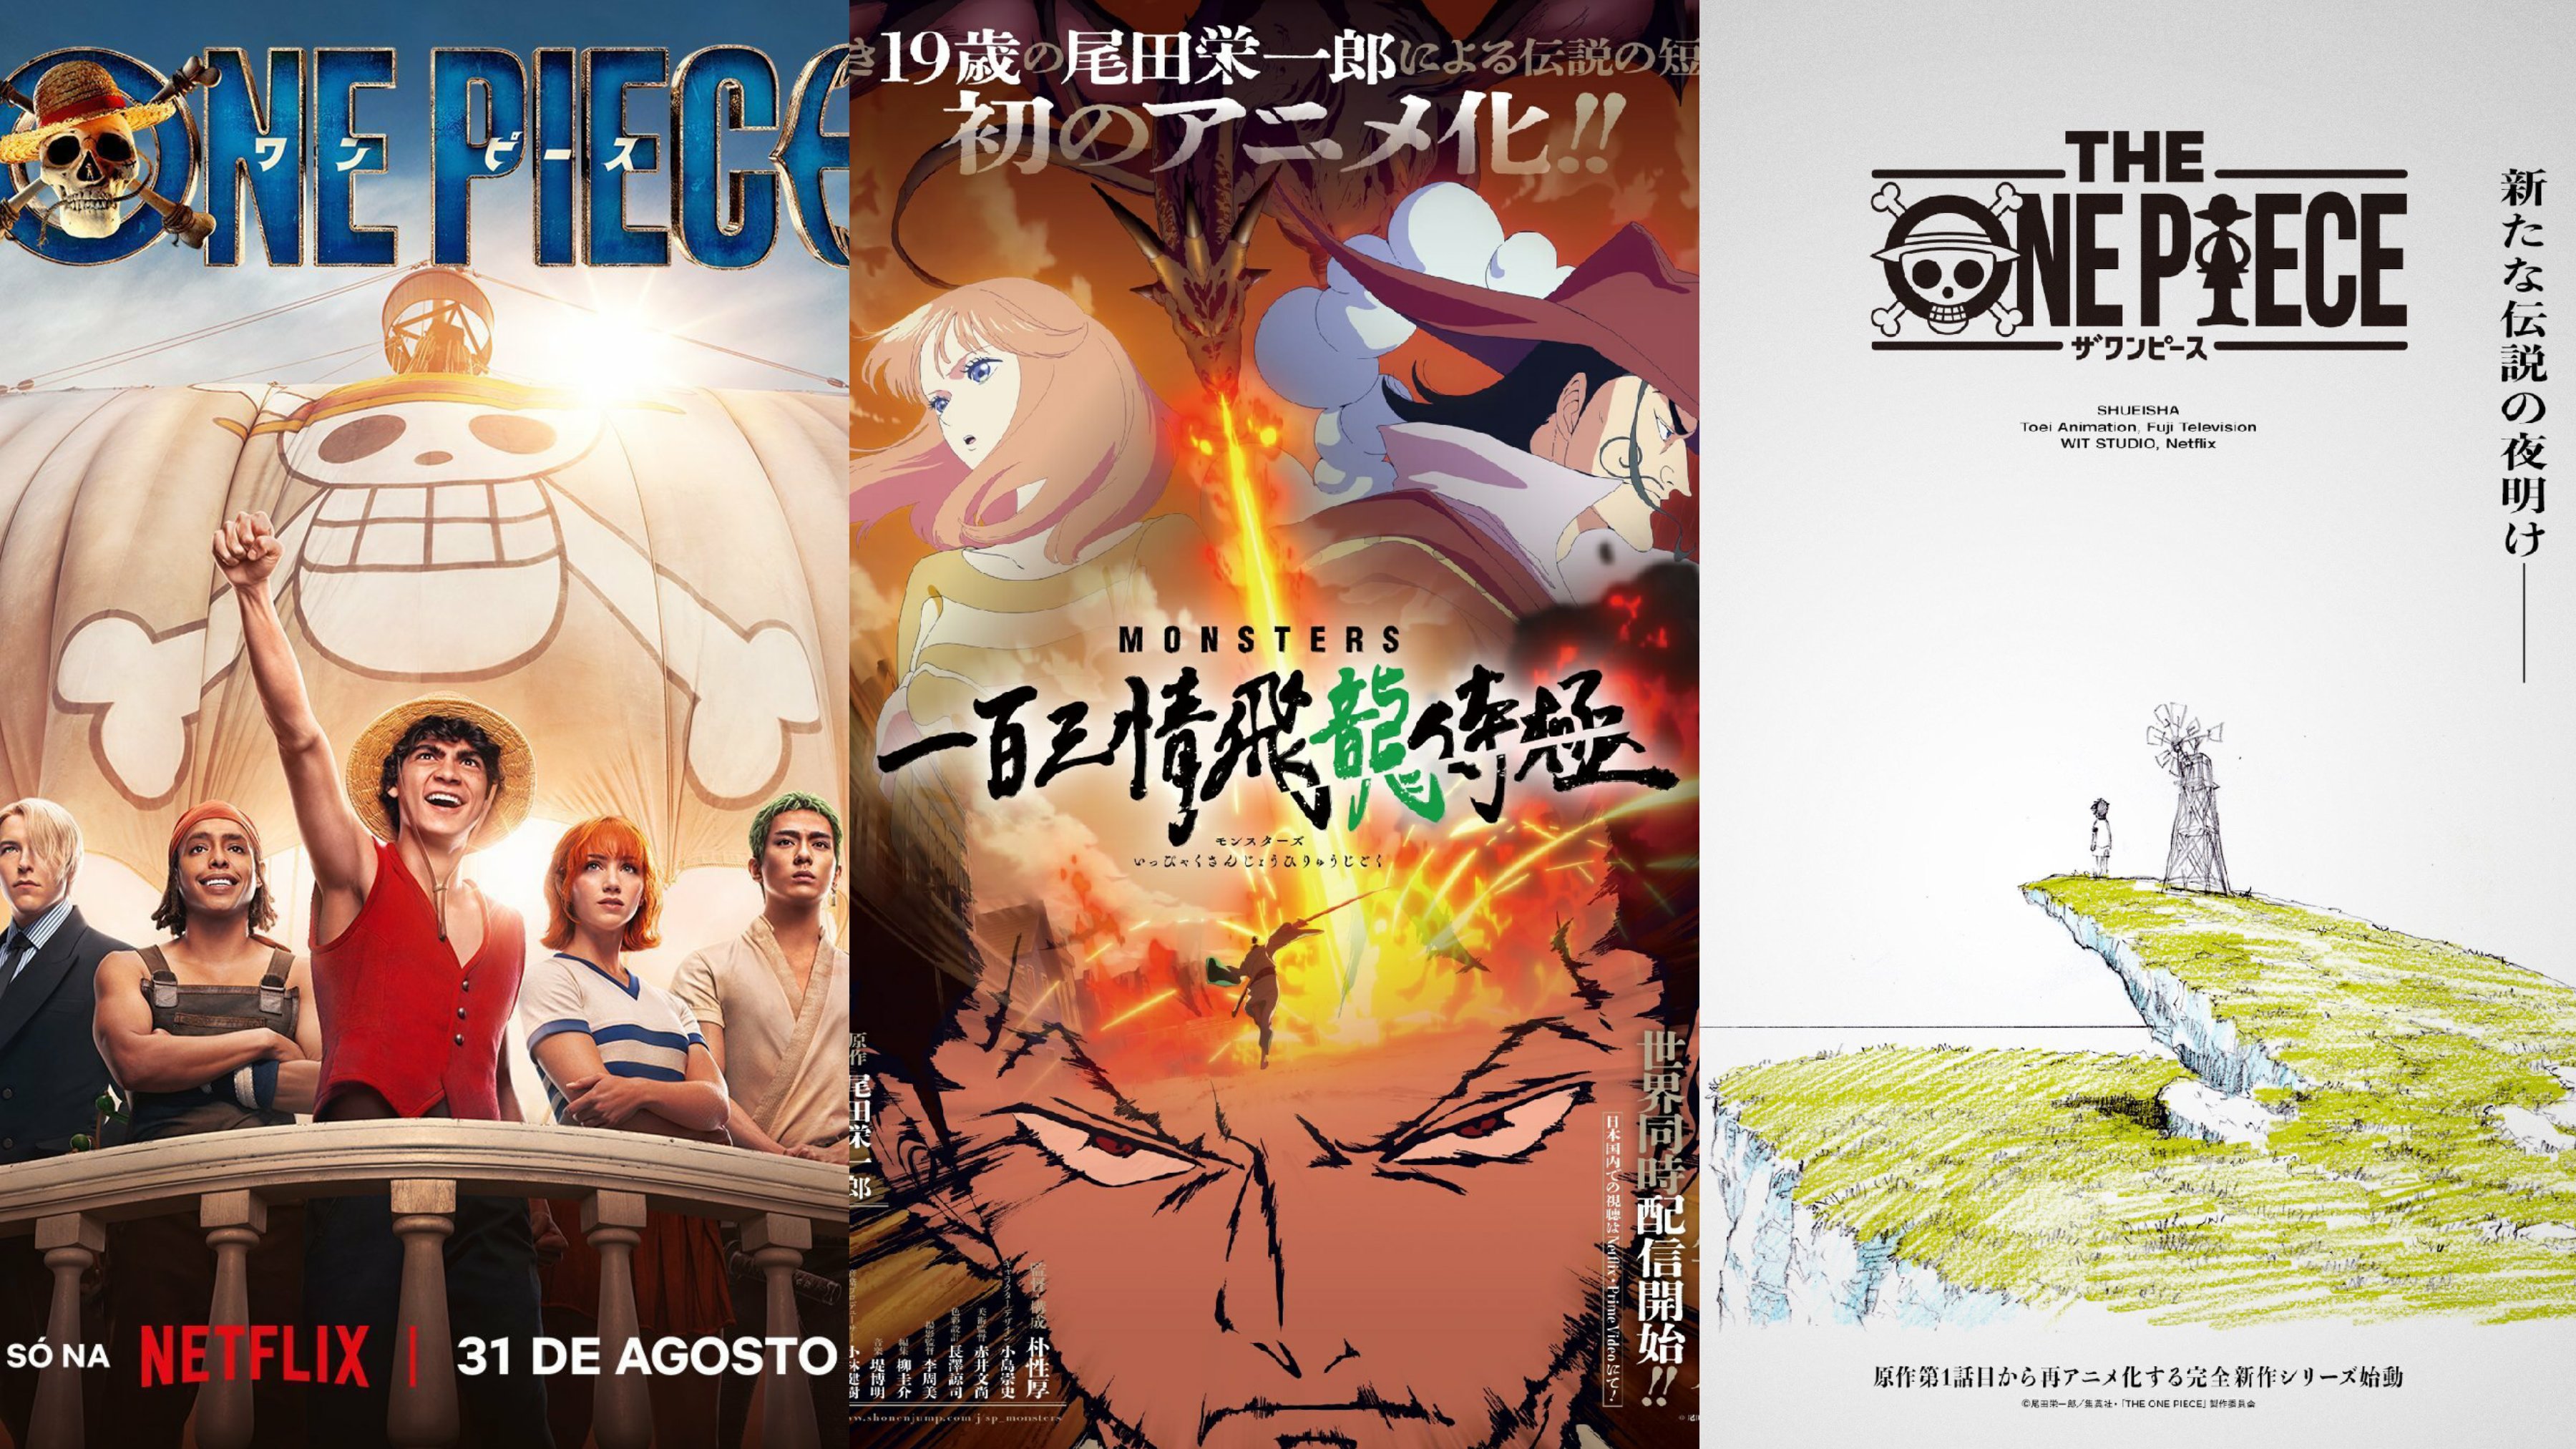 One Piece News on X: 🚨 HYPE HYPE HYPE! Títulos dos próximos episódios de One  Piece: Ep. 1047 (15/01): O Dragão Rosa Ep. 1048 (22/01): Yamato! No Ep.  1046: Zoro e Sanji